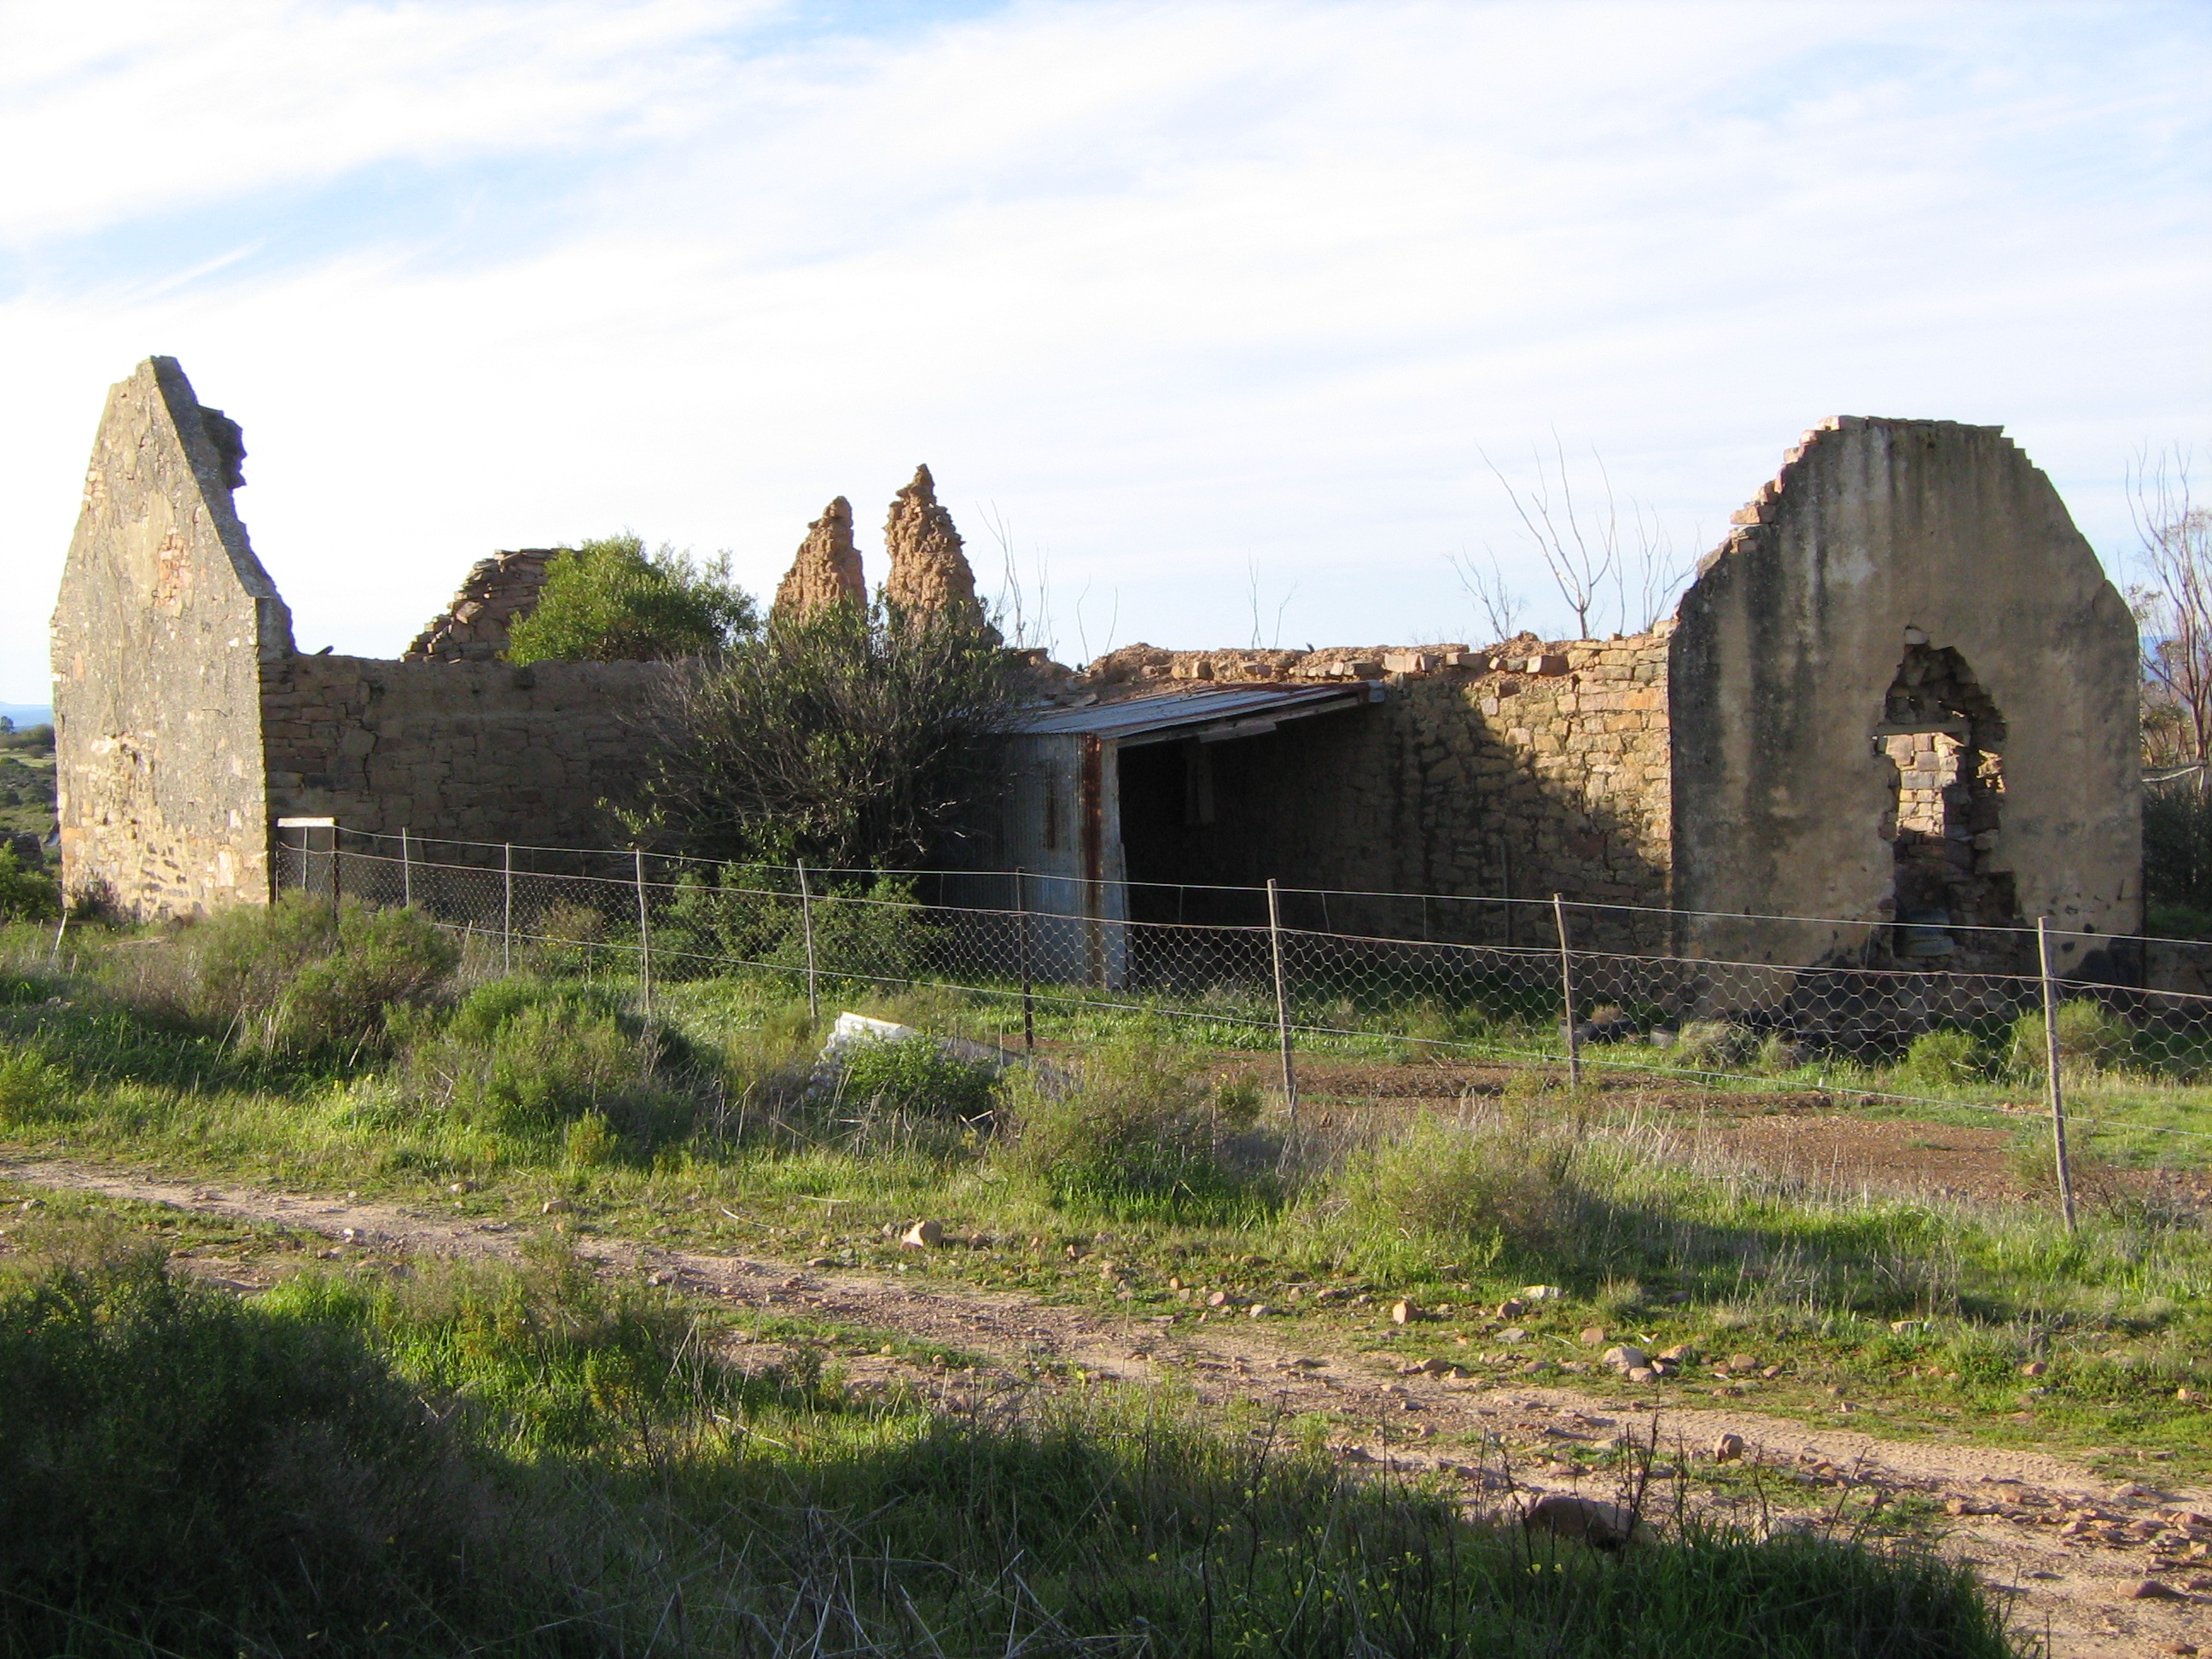 Ruins at 'Ou plaas'